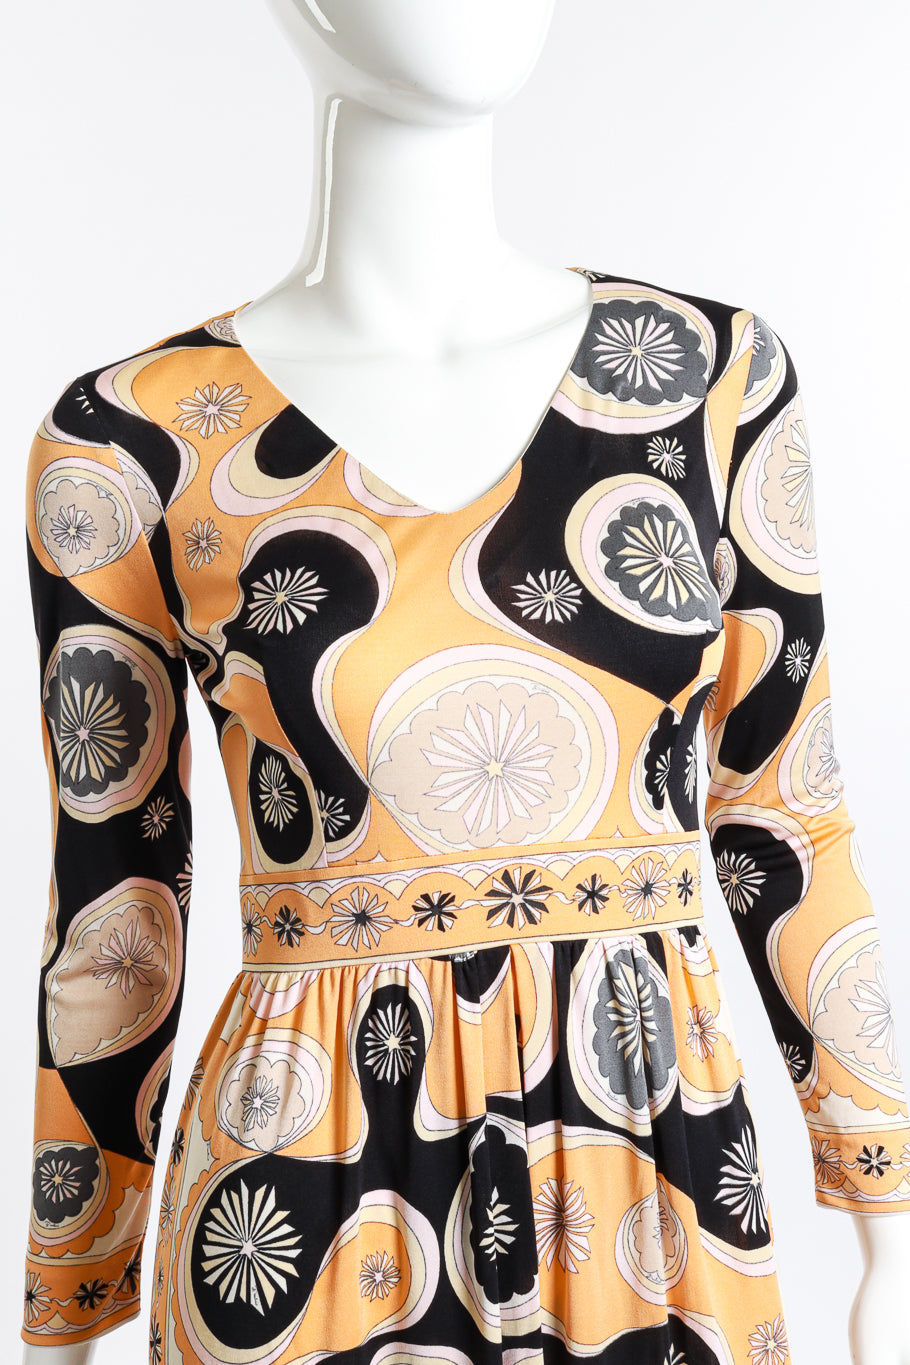 Geo Floral Print Dress by Pucci front detail mannequin @RECESS LA